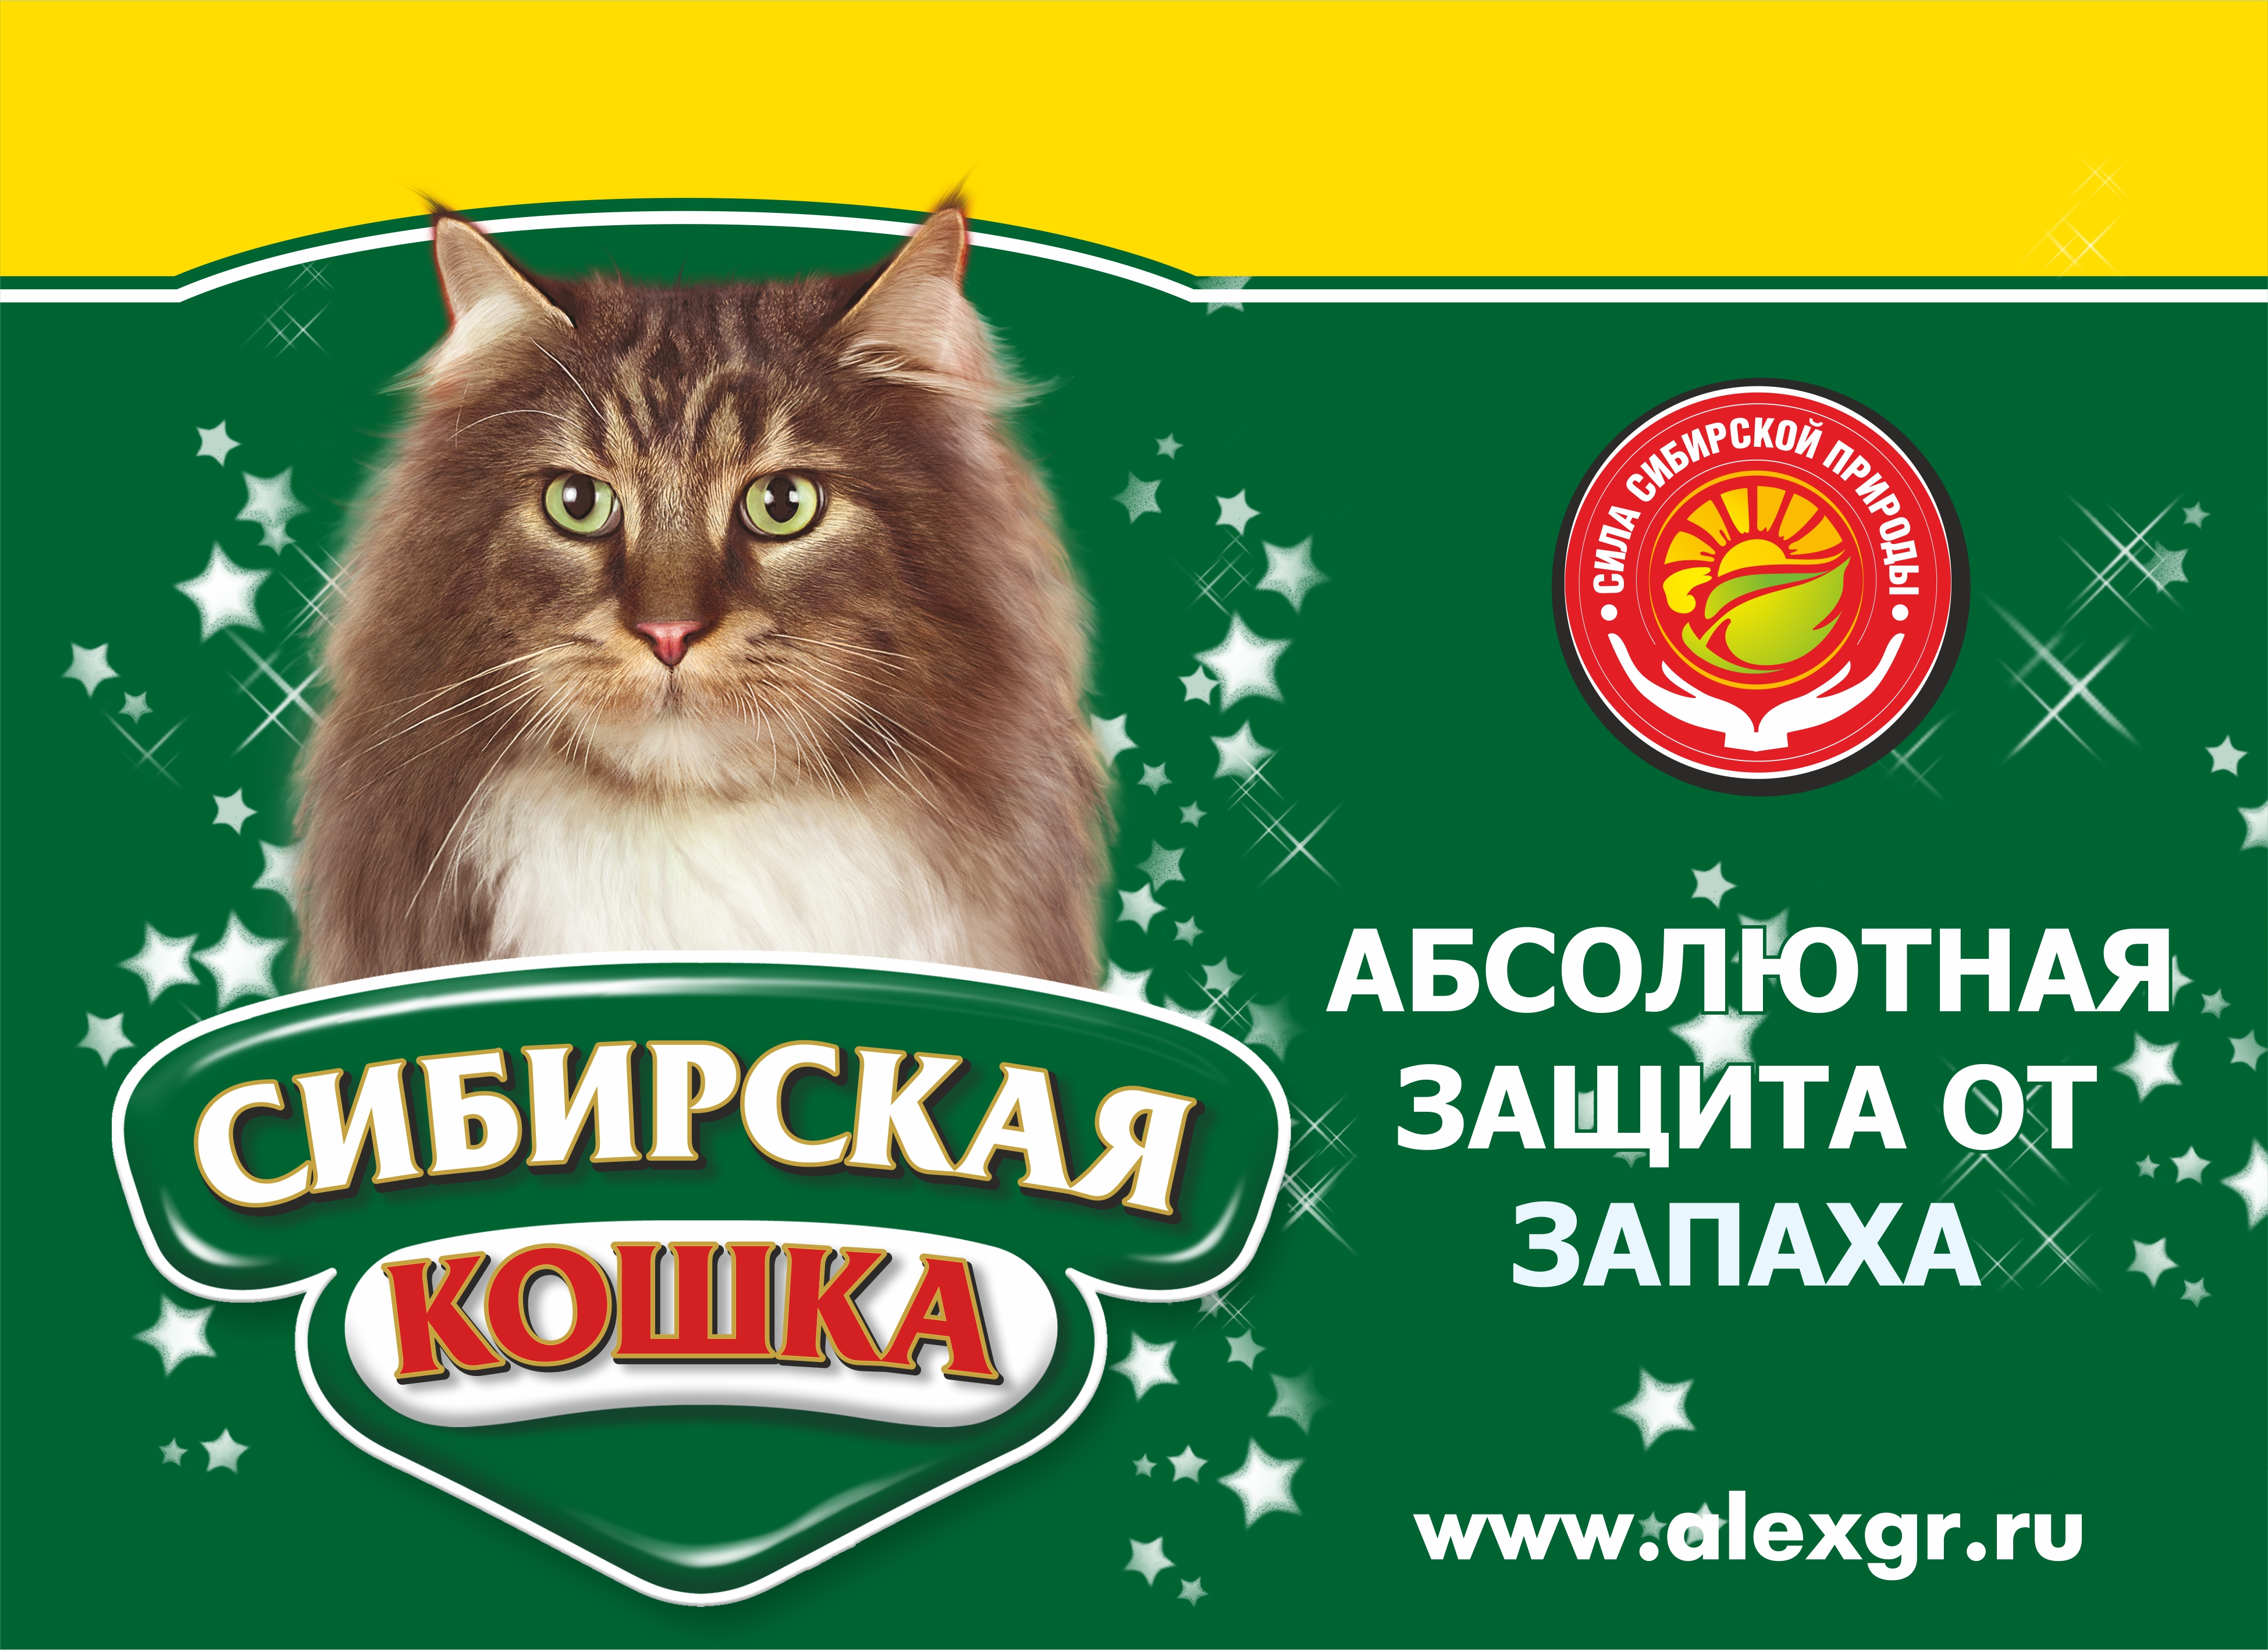 Логотип Сибирская кошка (1)